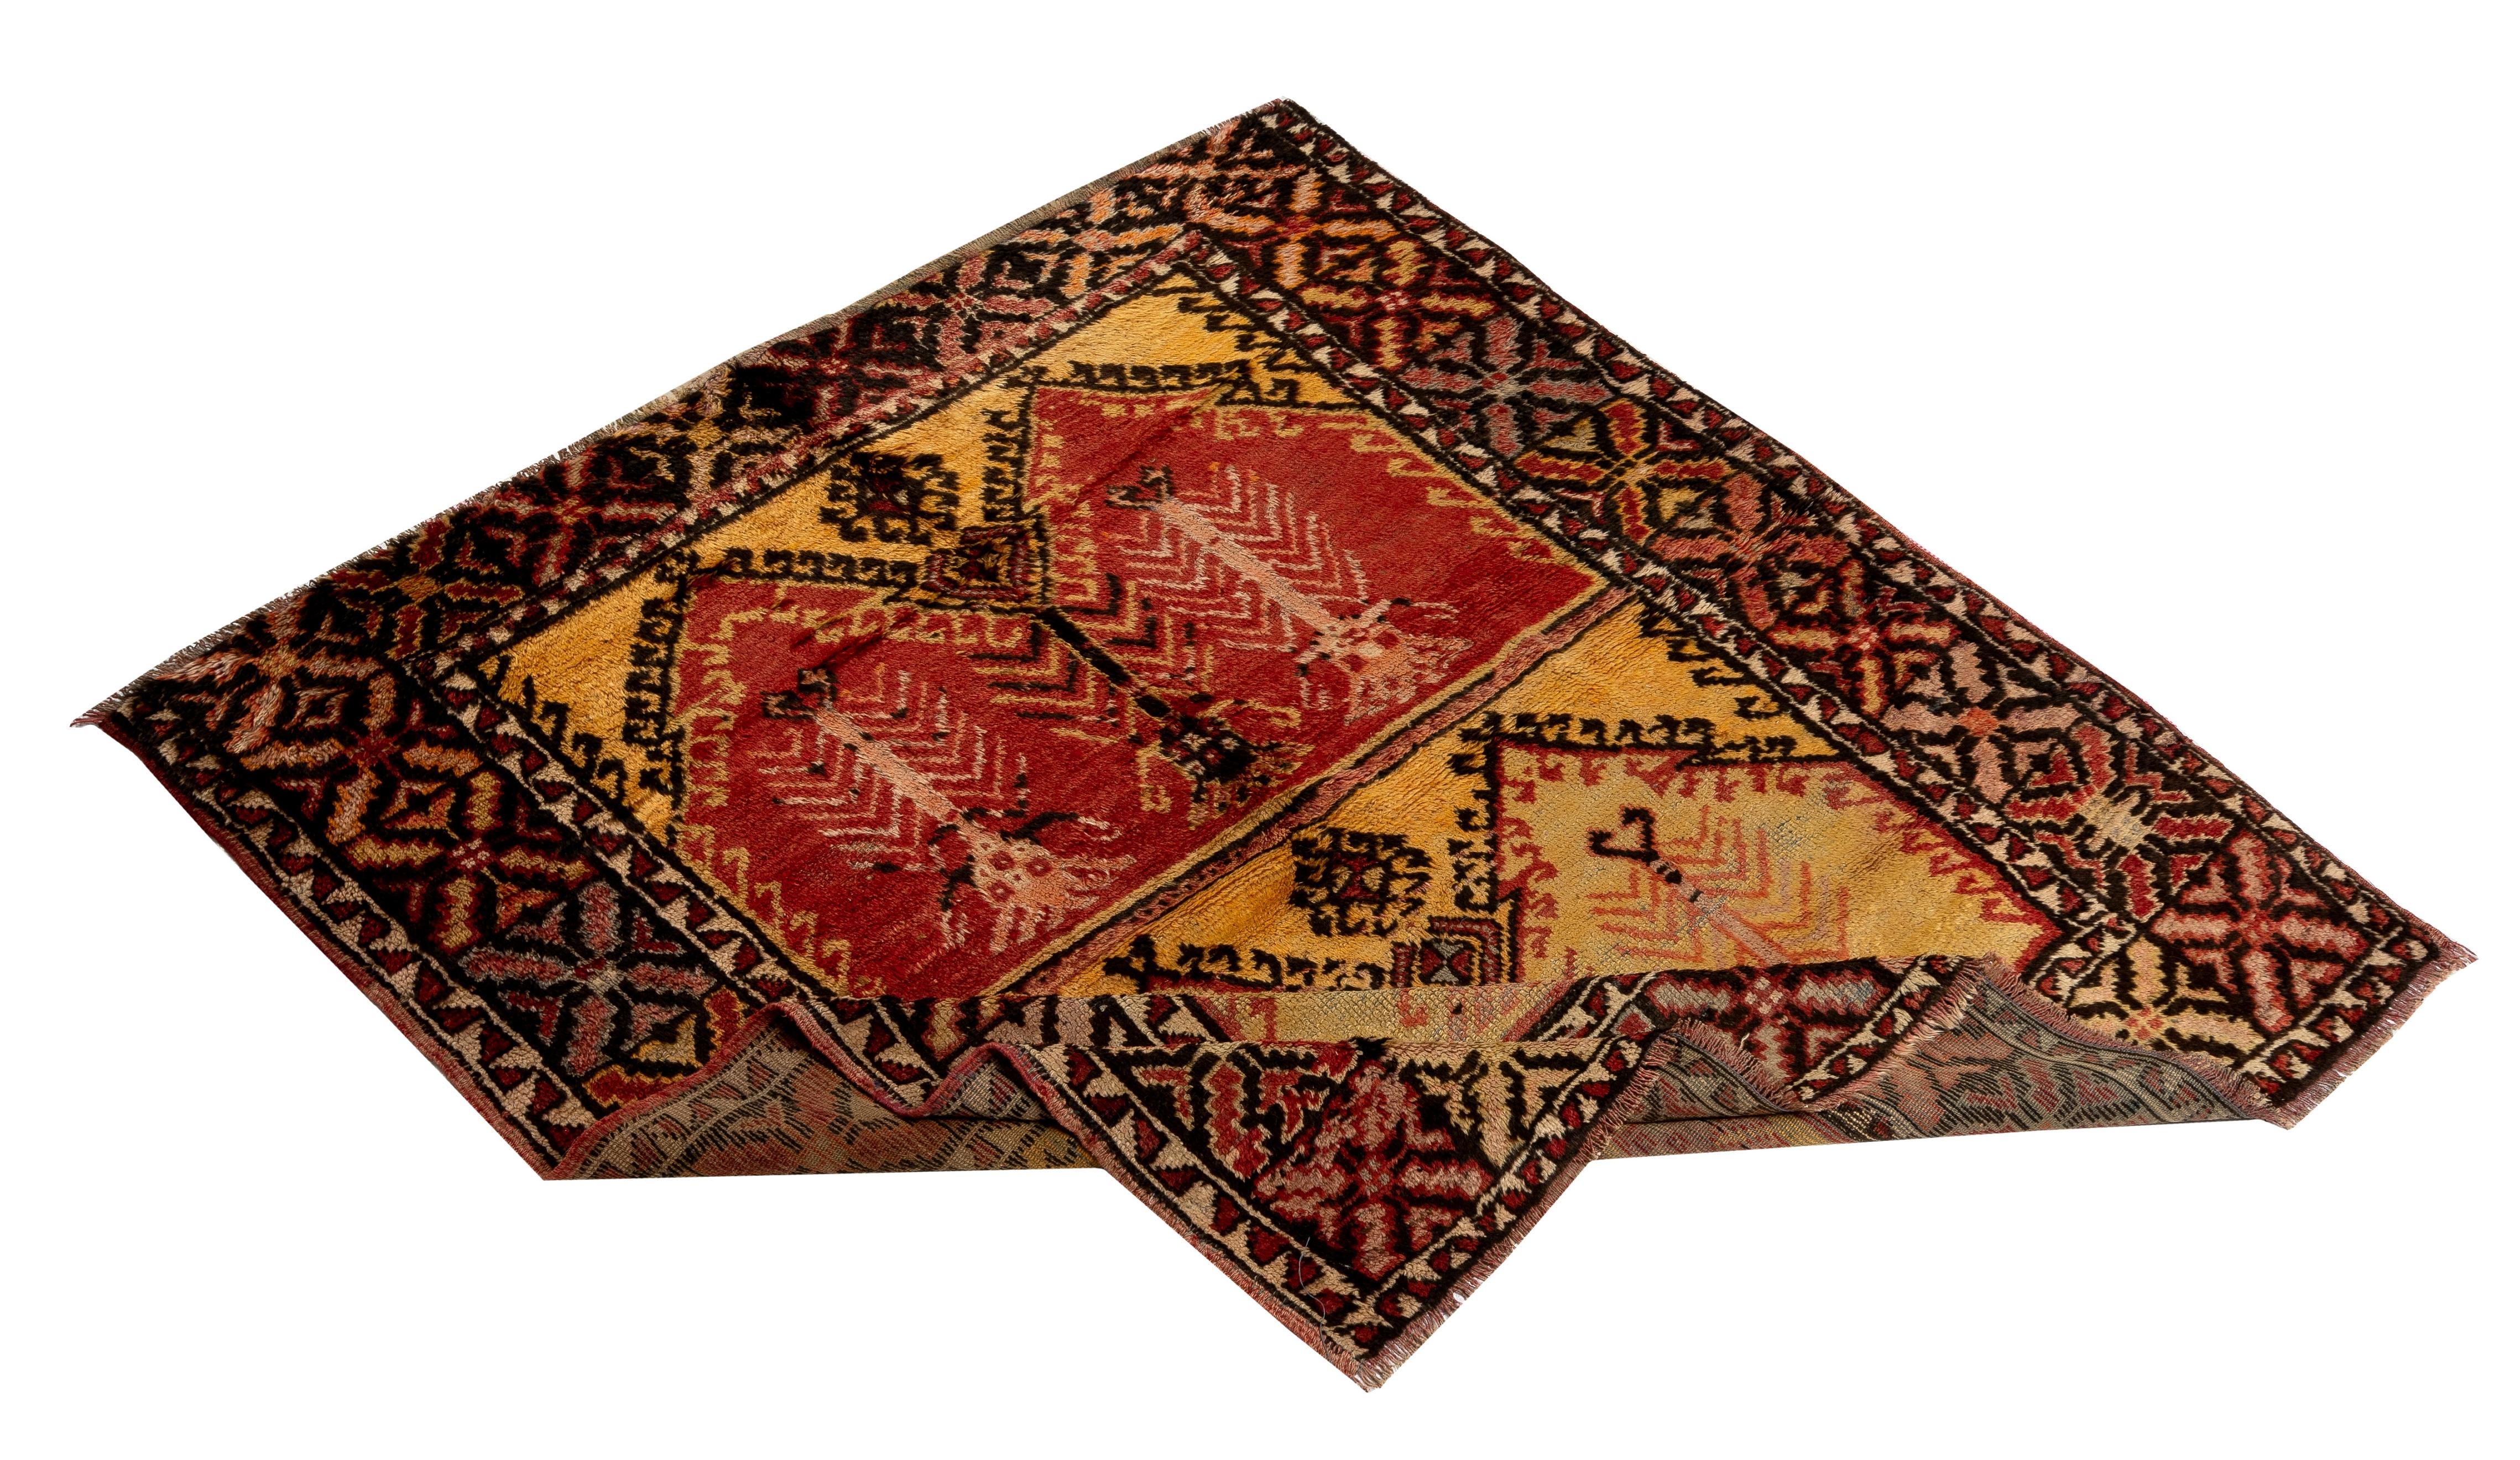 Ein einzigartiger, handgeknüpfter Tulu-Teppich (türkisches Wort für dick geknüpft) aus Konya in Zentralanatolien, Türkei. Diese einfachen und eher kleinen Teppiche mit glänzendem Wollflor wurden von Nomaden und Dorfbewohnern in der Region Konya in